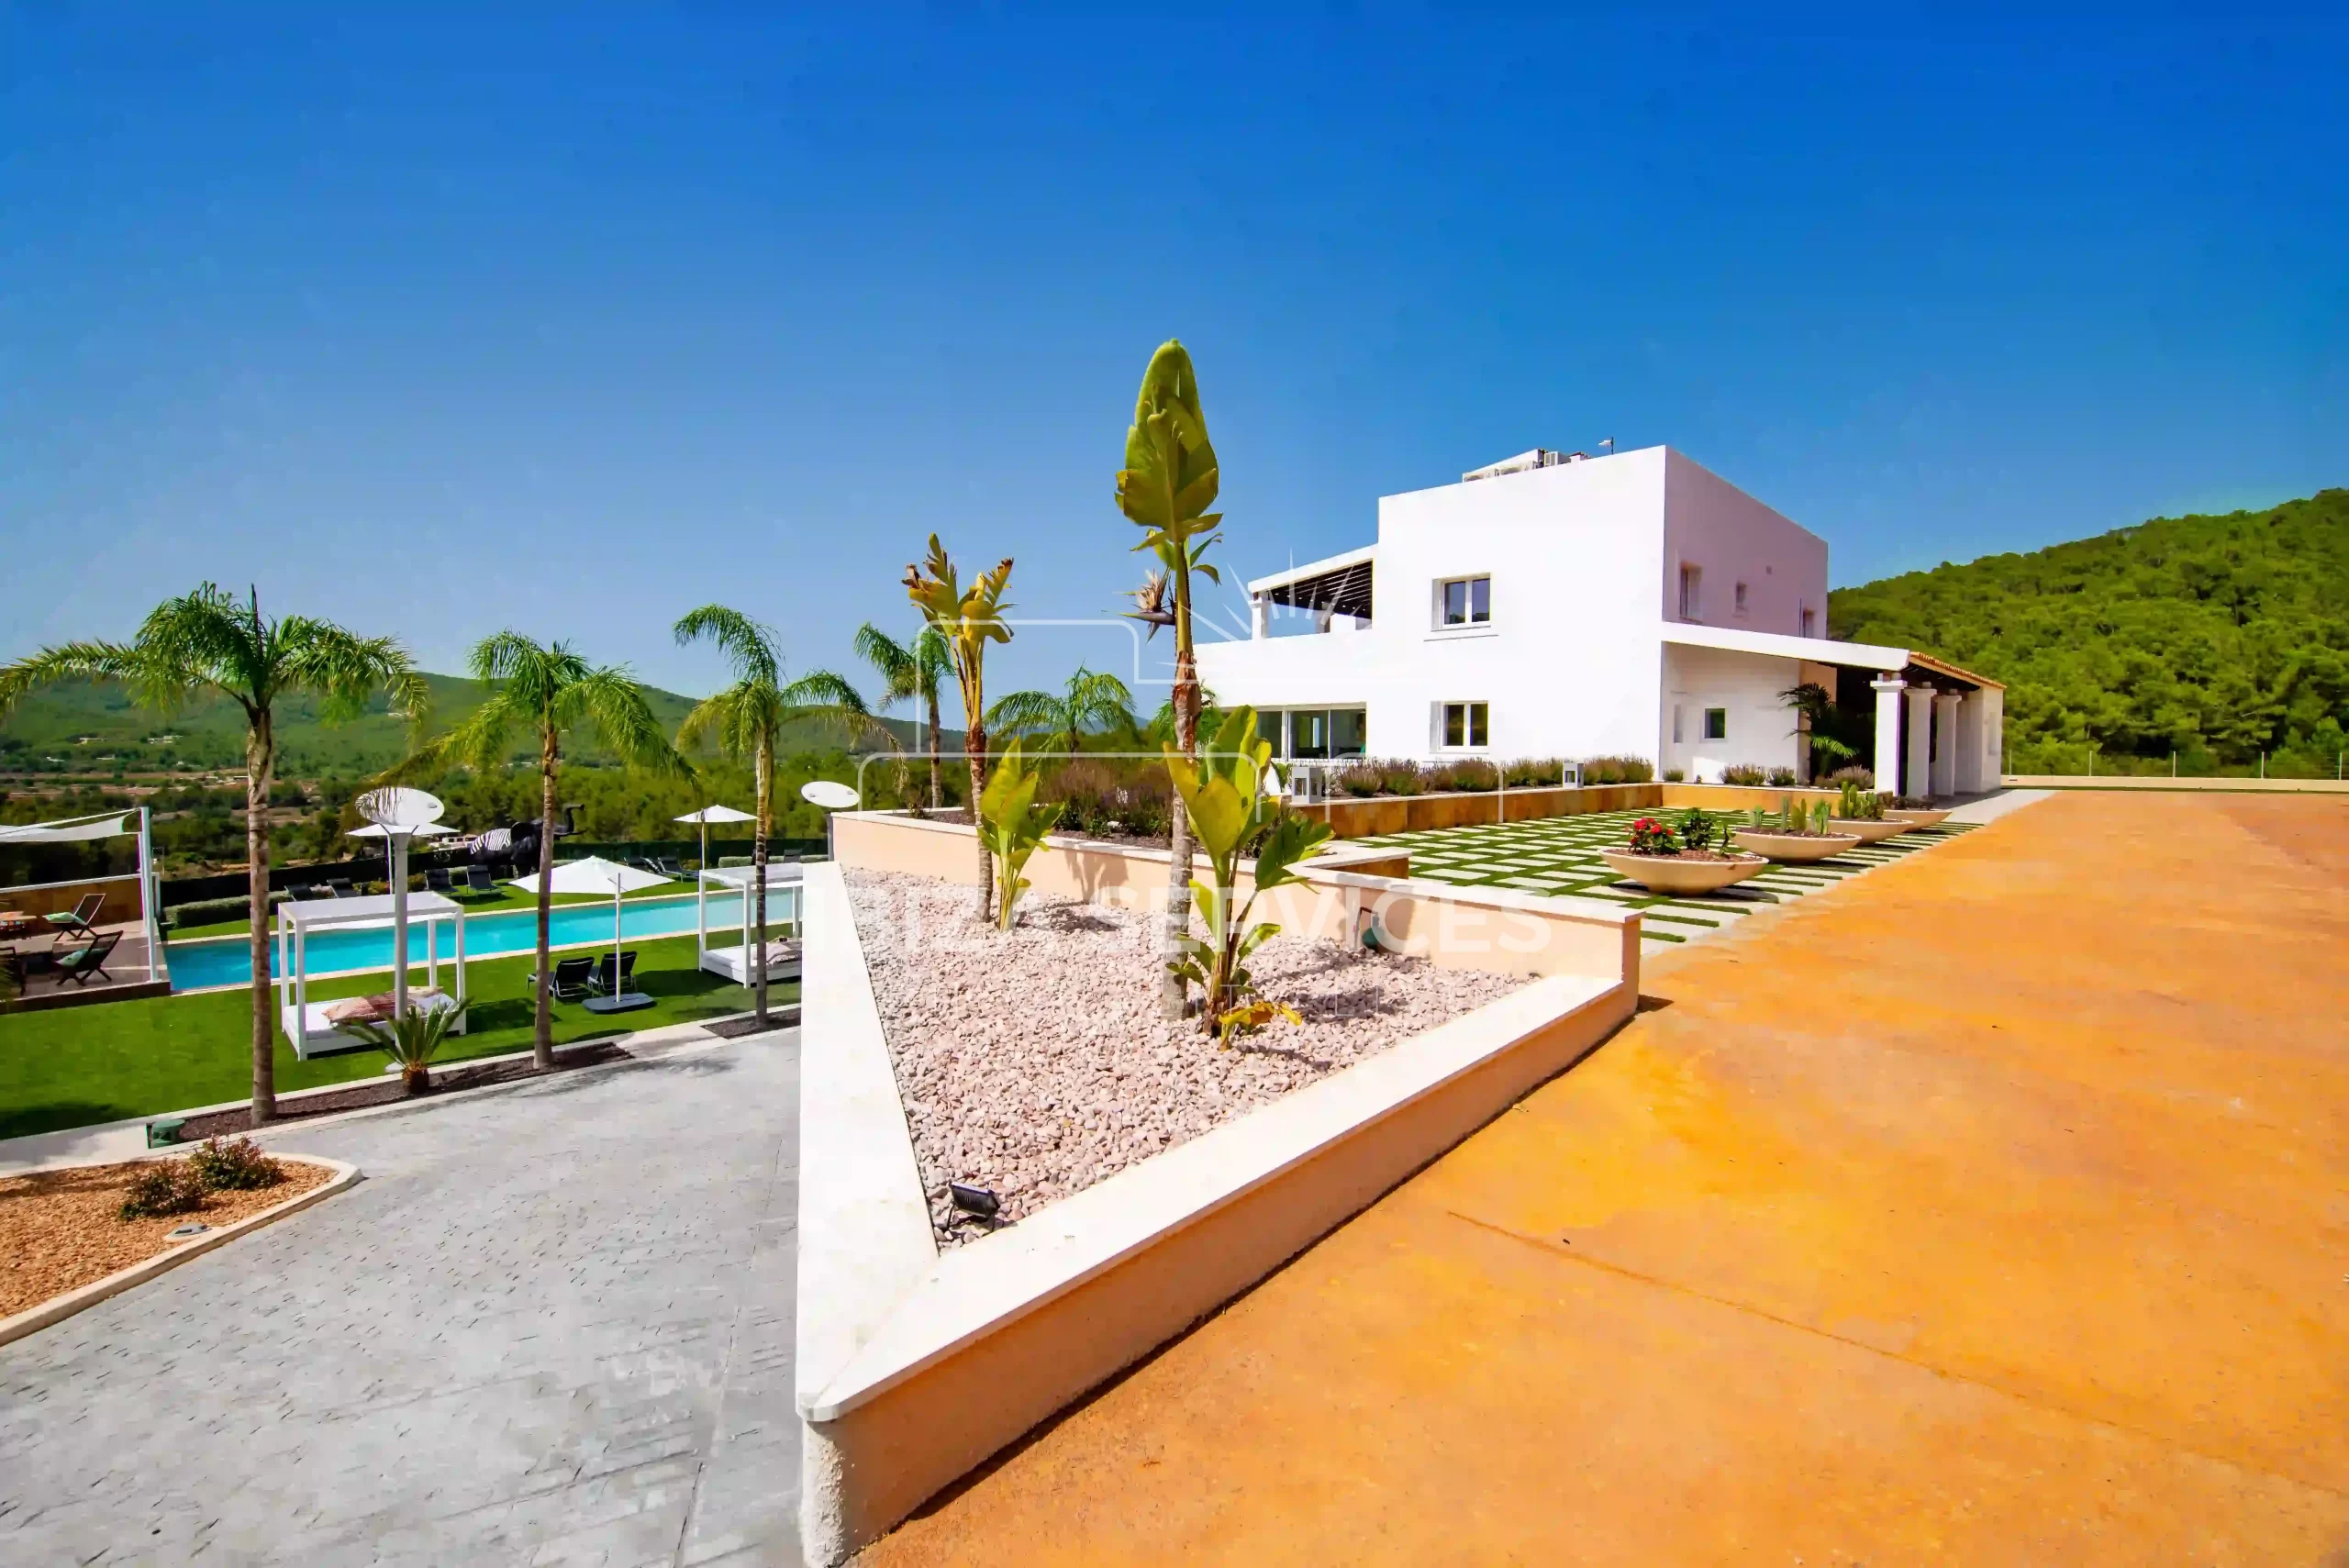 Espectacular Villa de 6 habitaciones con vistas al campo en Santa Eulalia: Alquiler vacacional excepcional.